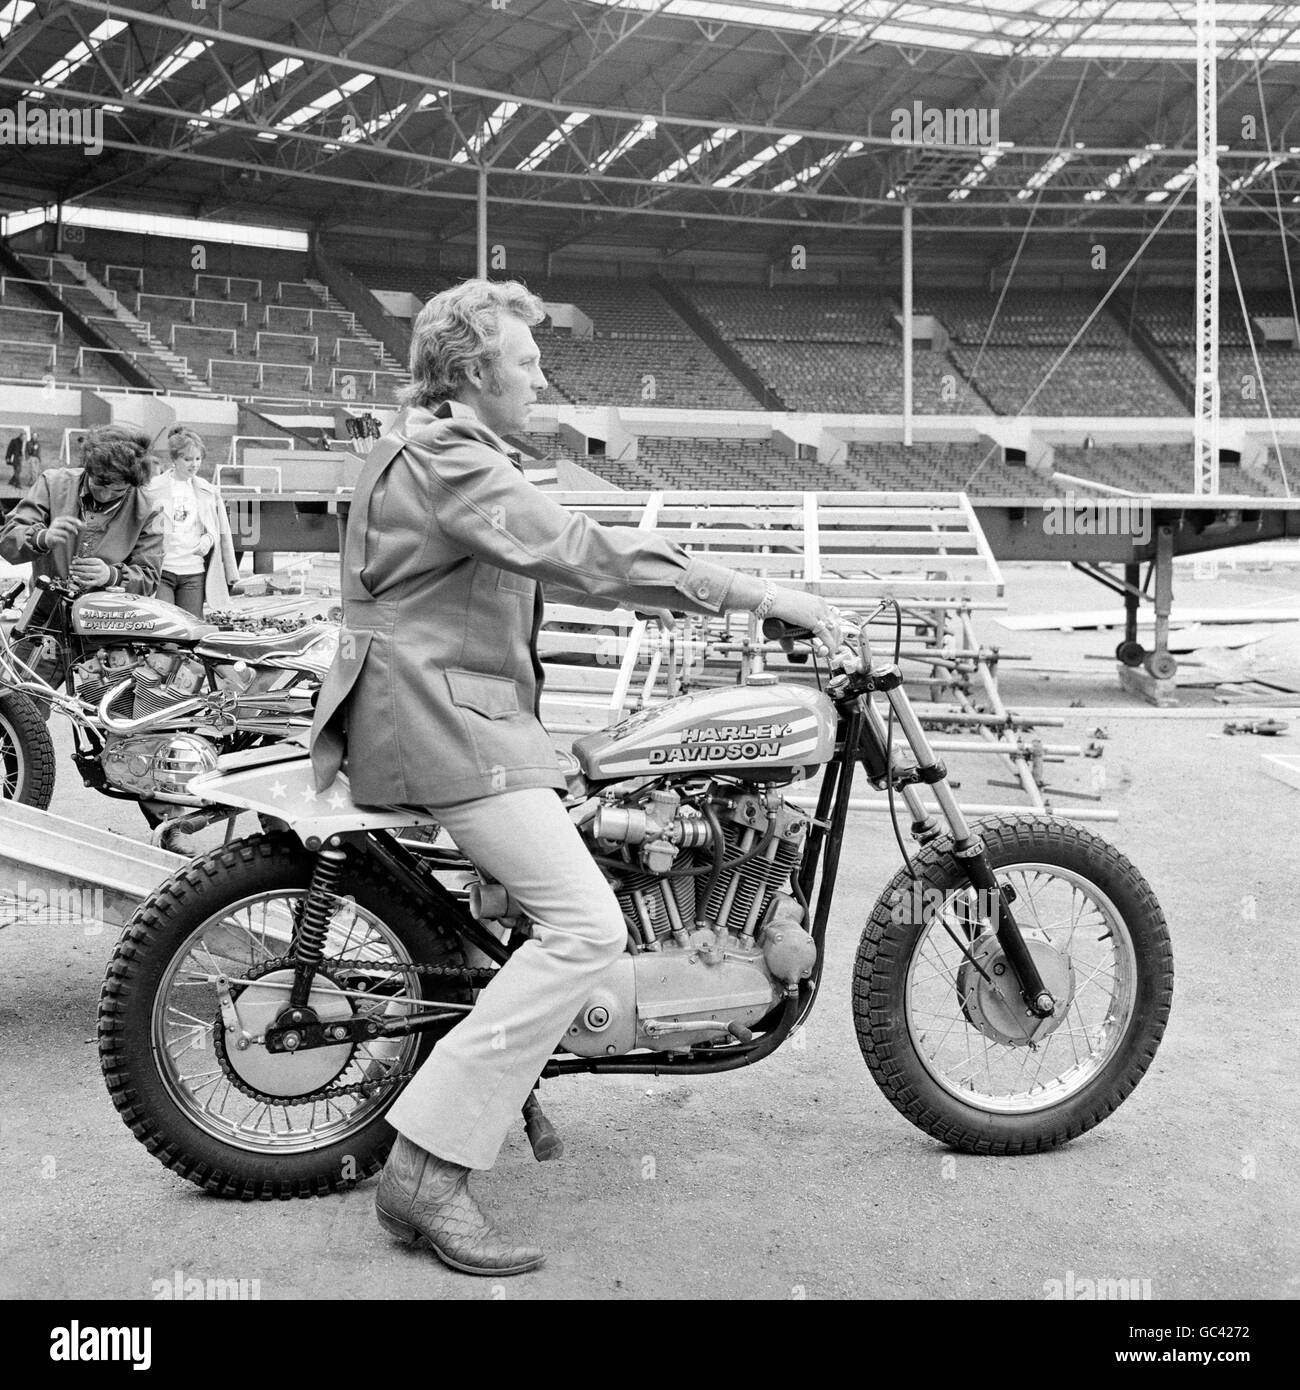 Il pilota stunt Evel Knievel si allenava con la sua moto Harley Davidson, prima di tentare di saltare oltre 13 autobus a due piani al Wembley Stadium. Foto Stock